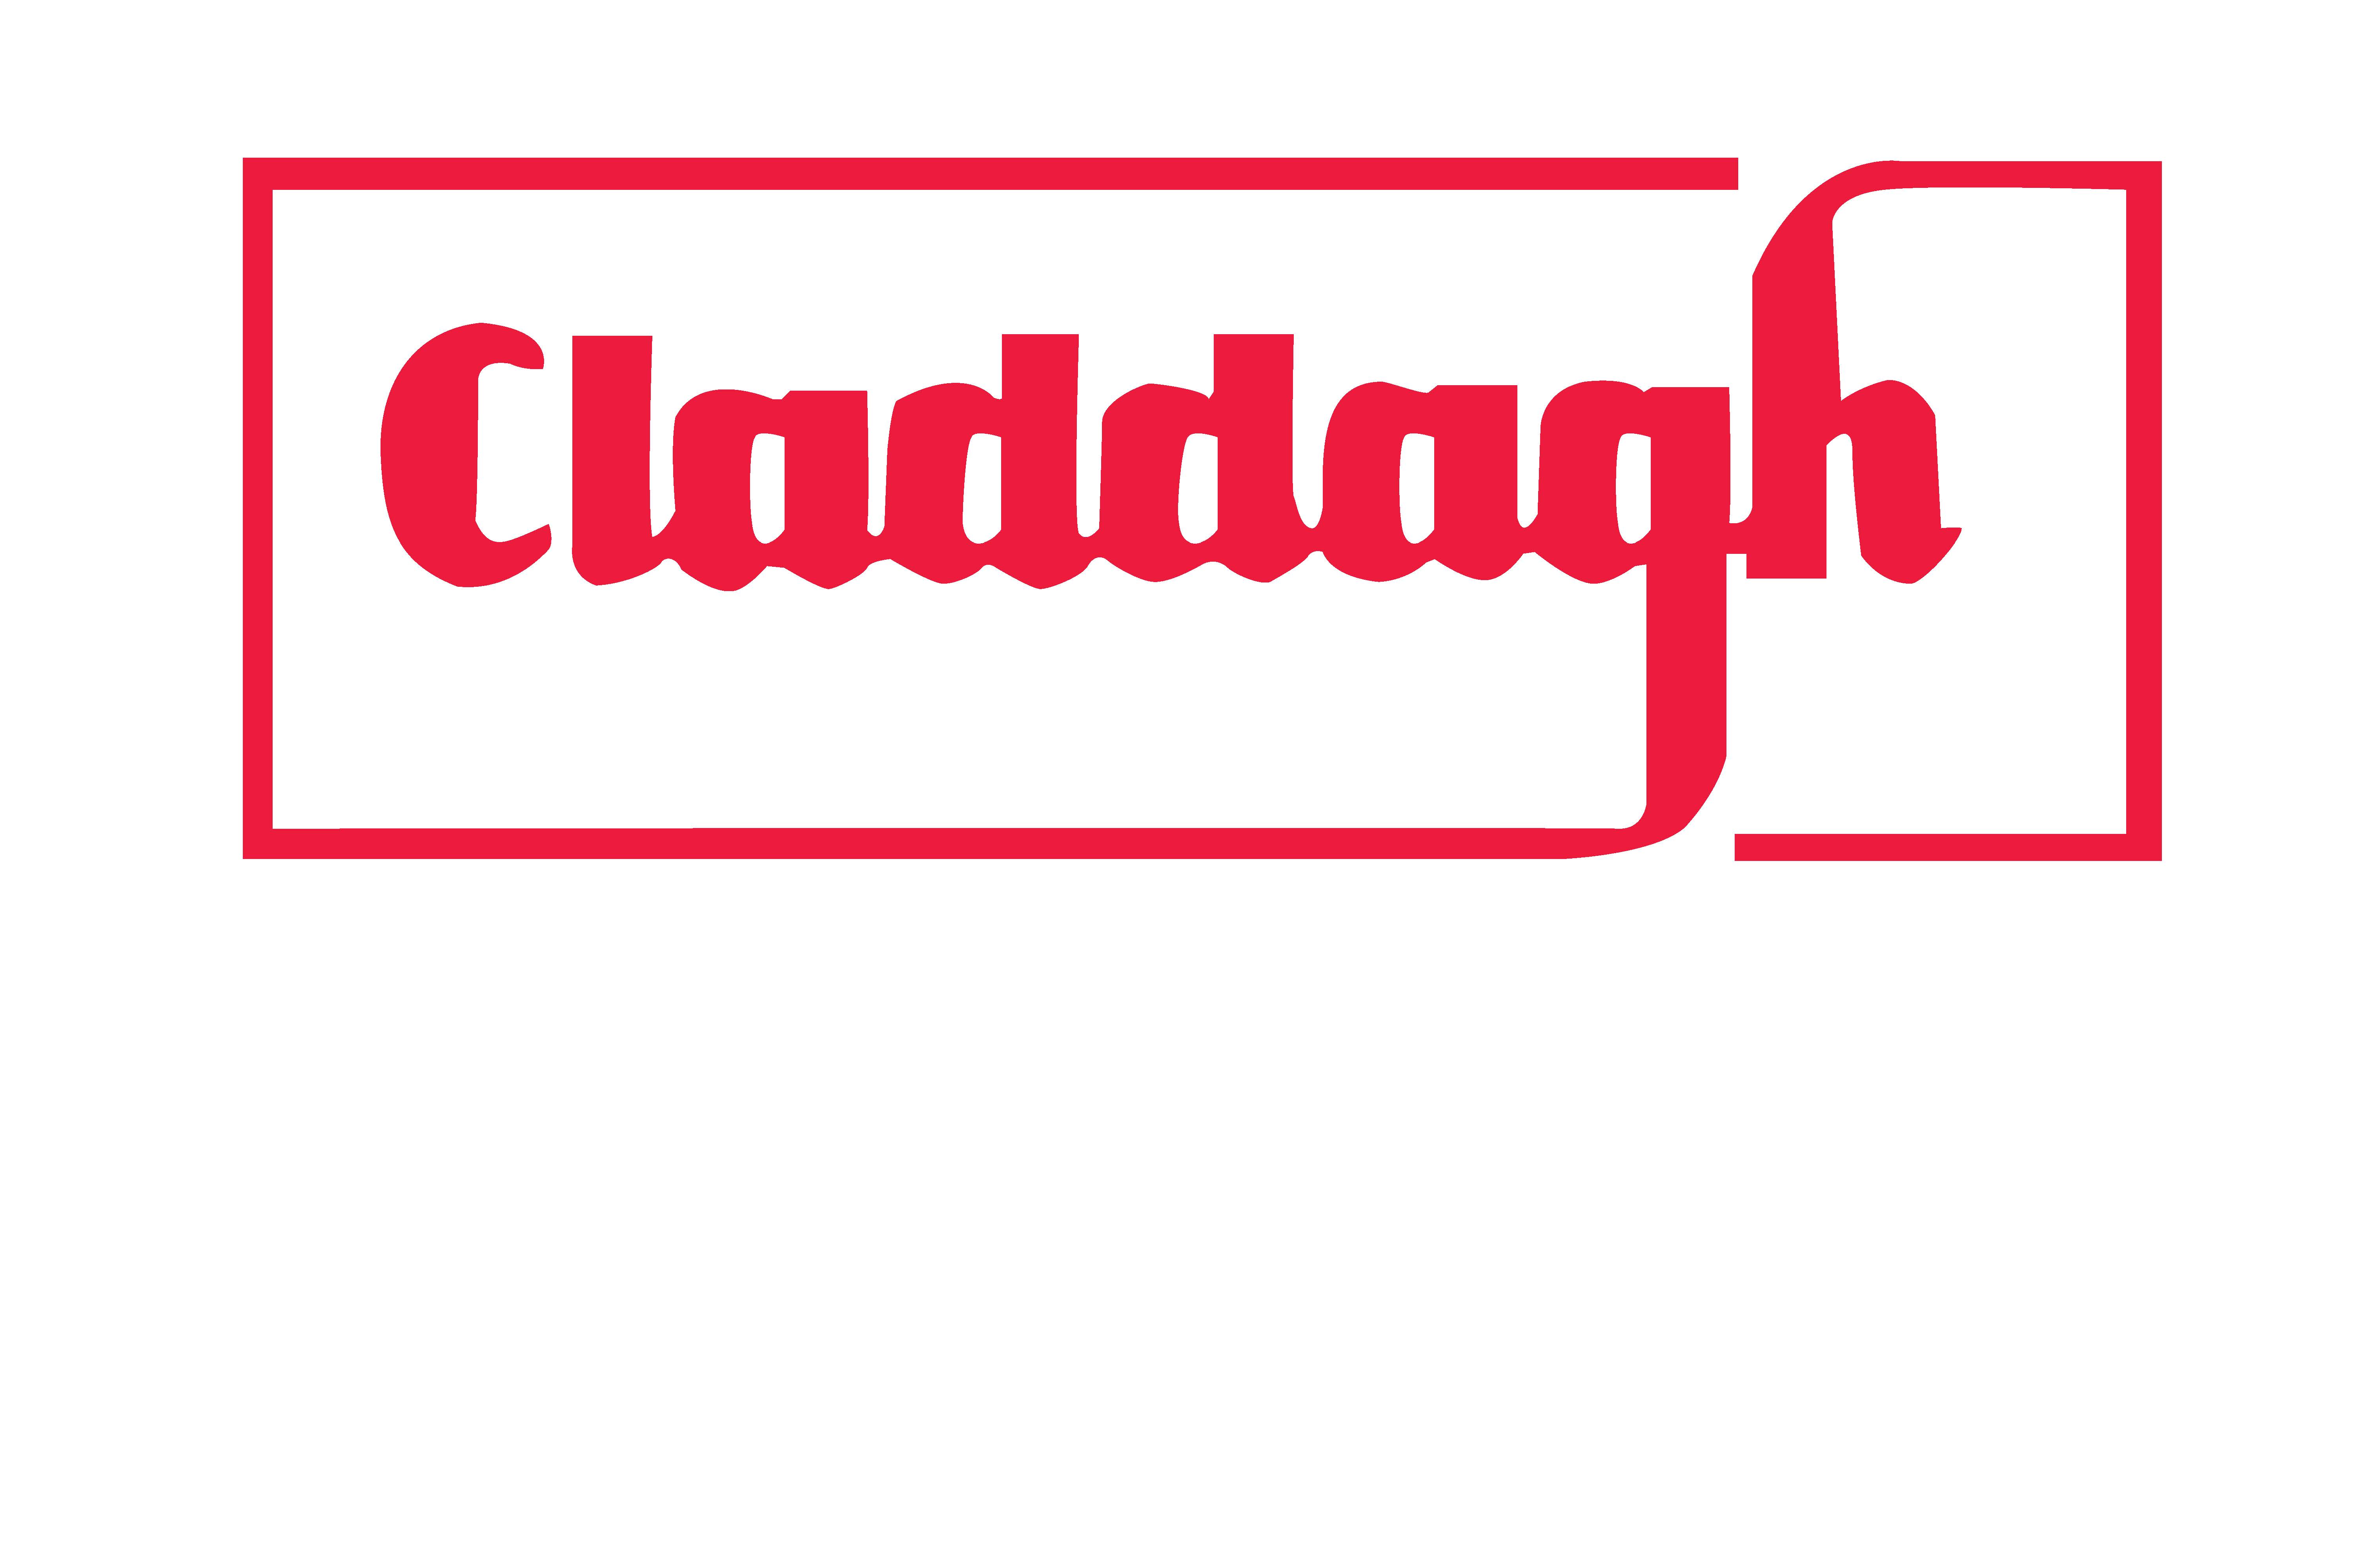 CladdaghLogo Large